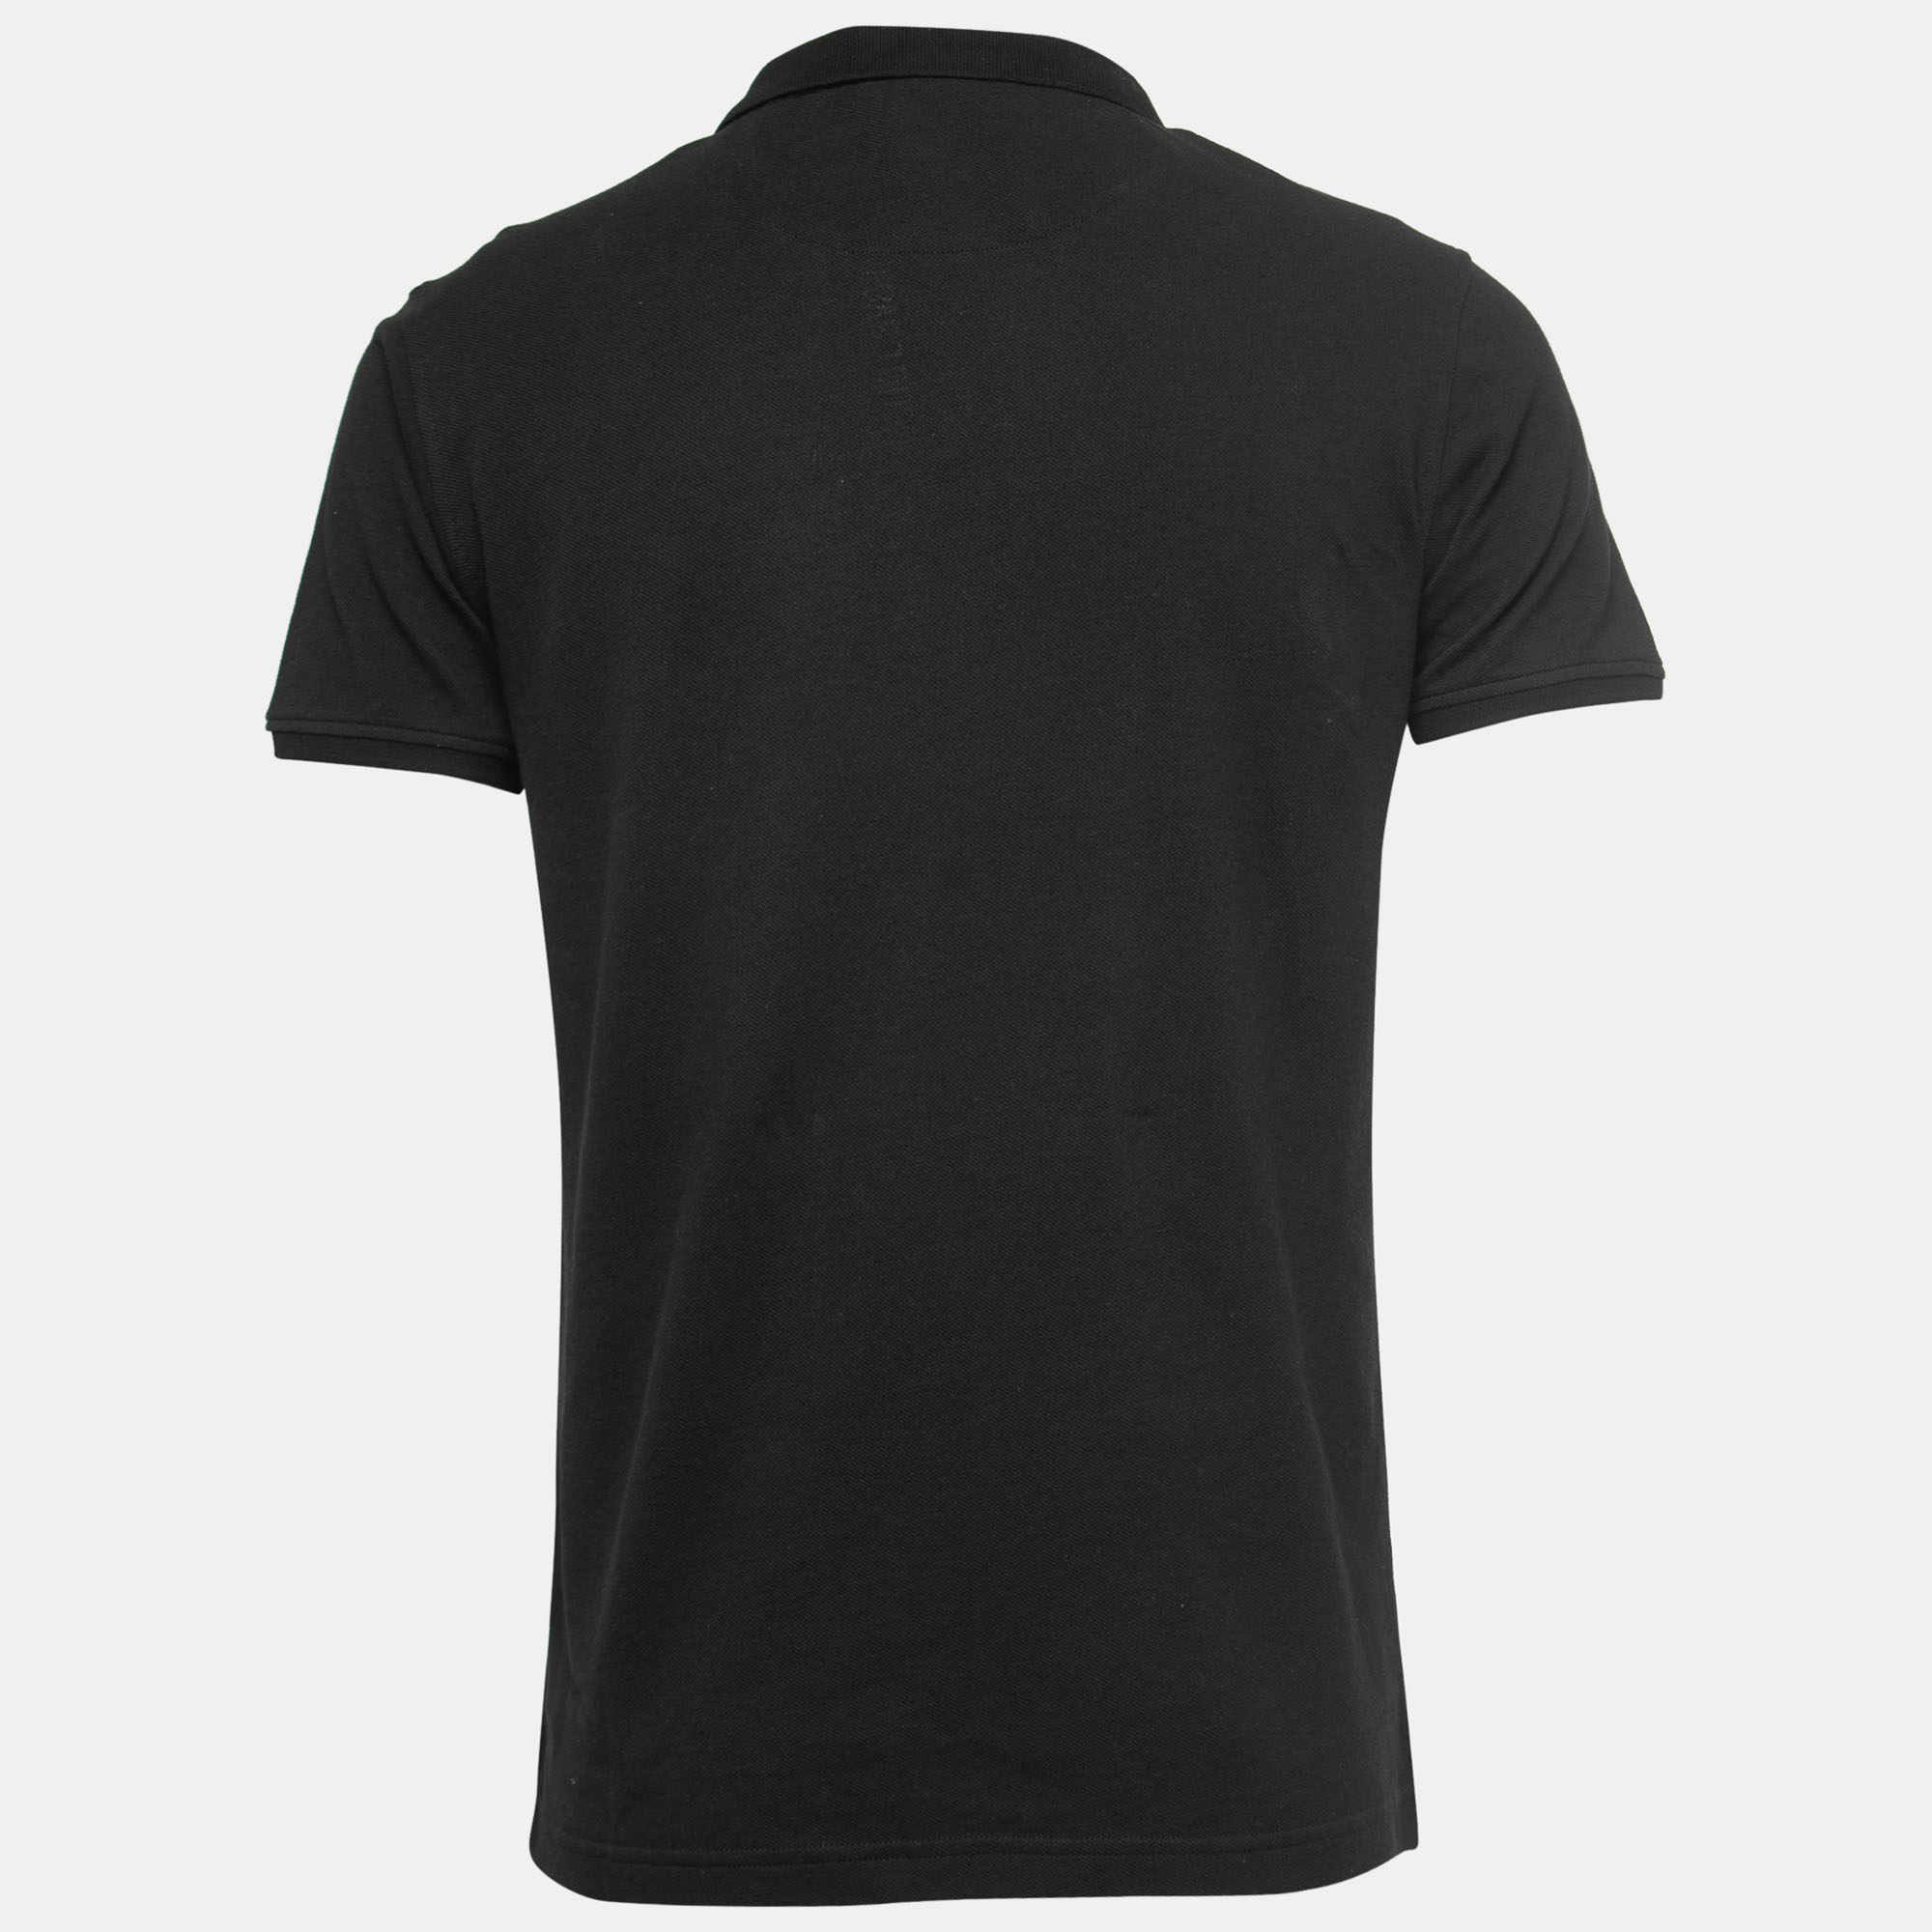 

Roberto Cavalli Black Cotton Pique Polo T-Shirt